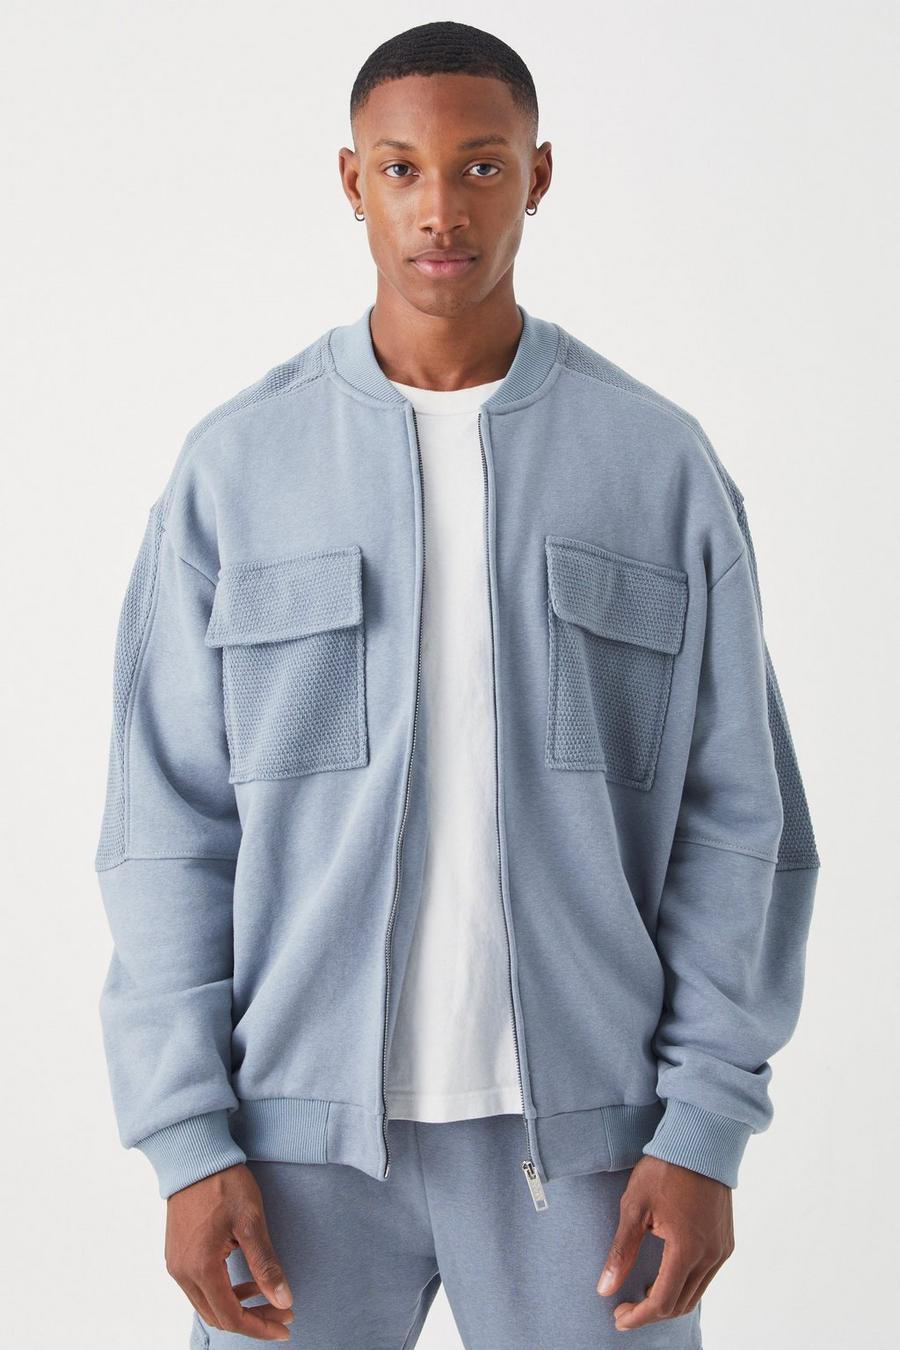 Grey Oversized Boxy Textured Pocket sweater Jacket